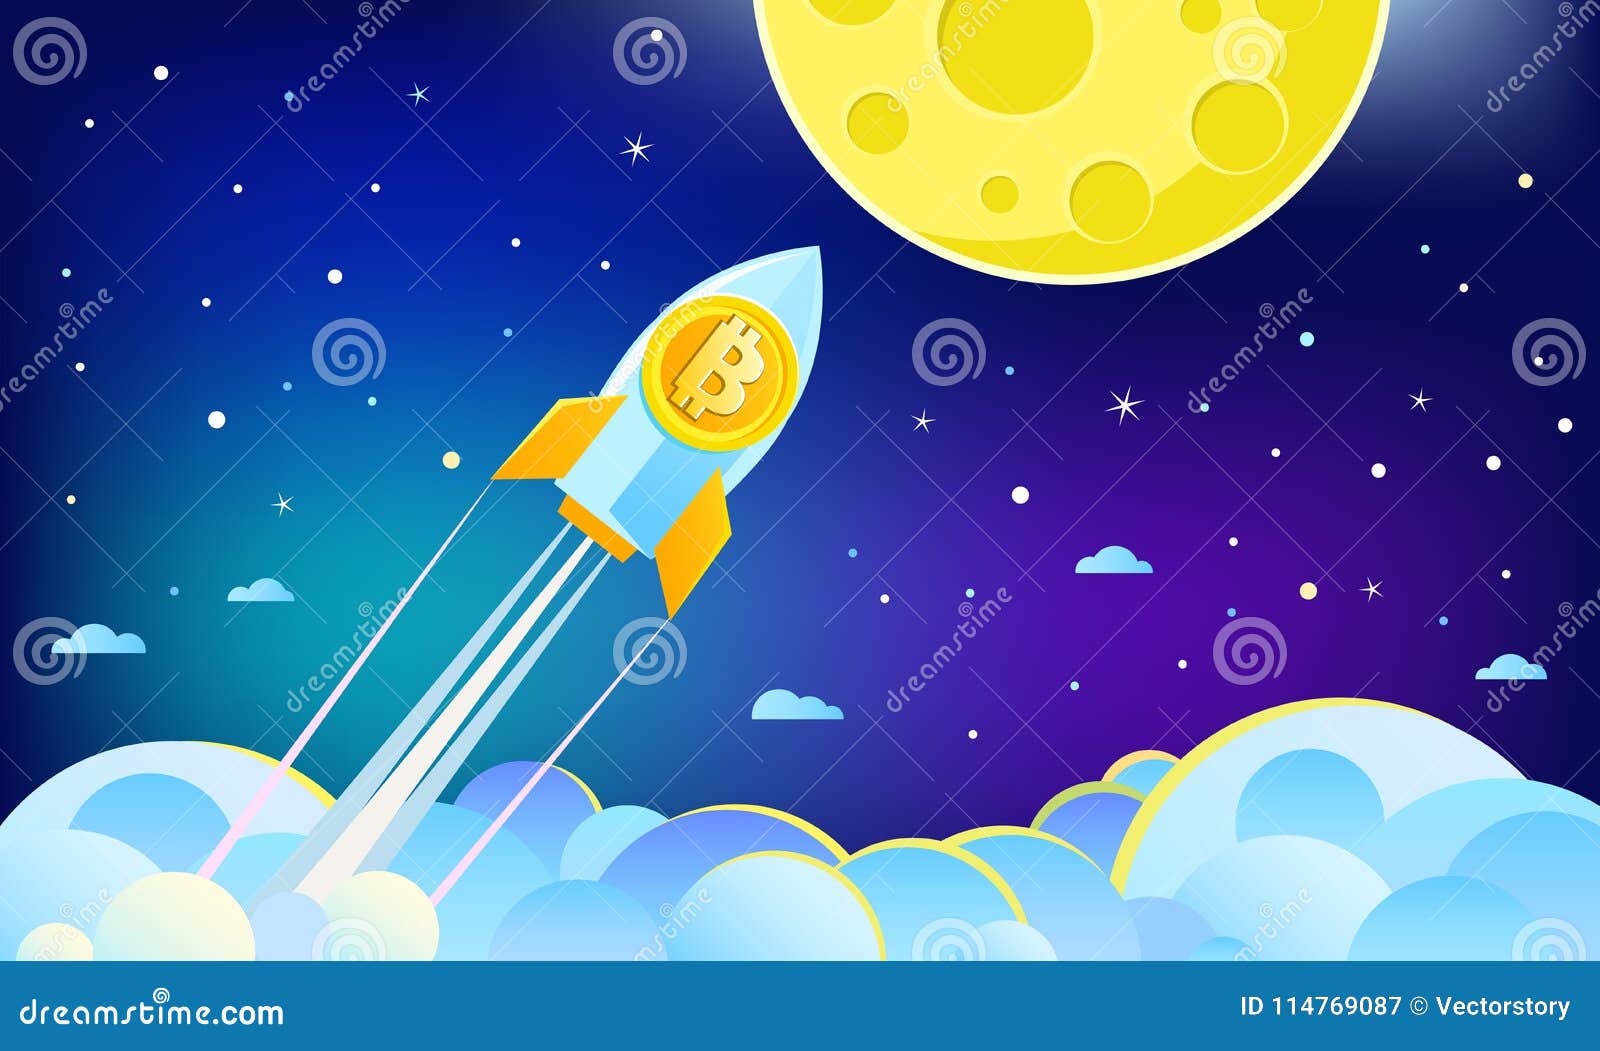 moon bitcoin hack)